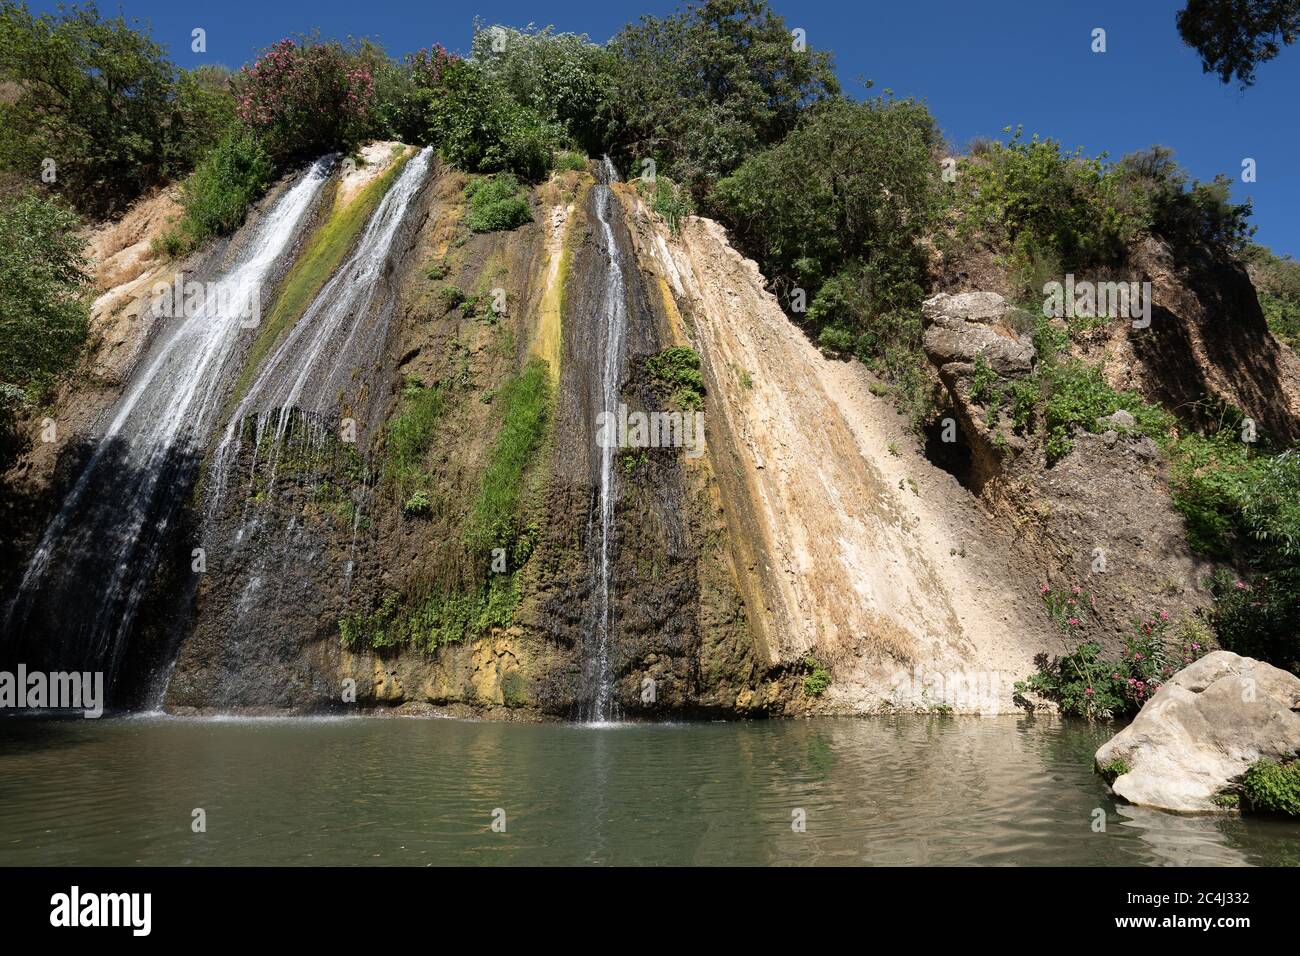 Riserva naturale del torrente Ayun cascata dalle sorgenti del fiume Giordano al confine libanese-israeliano Foto Stock